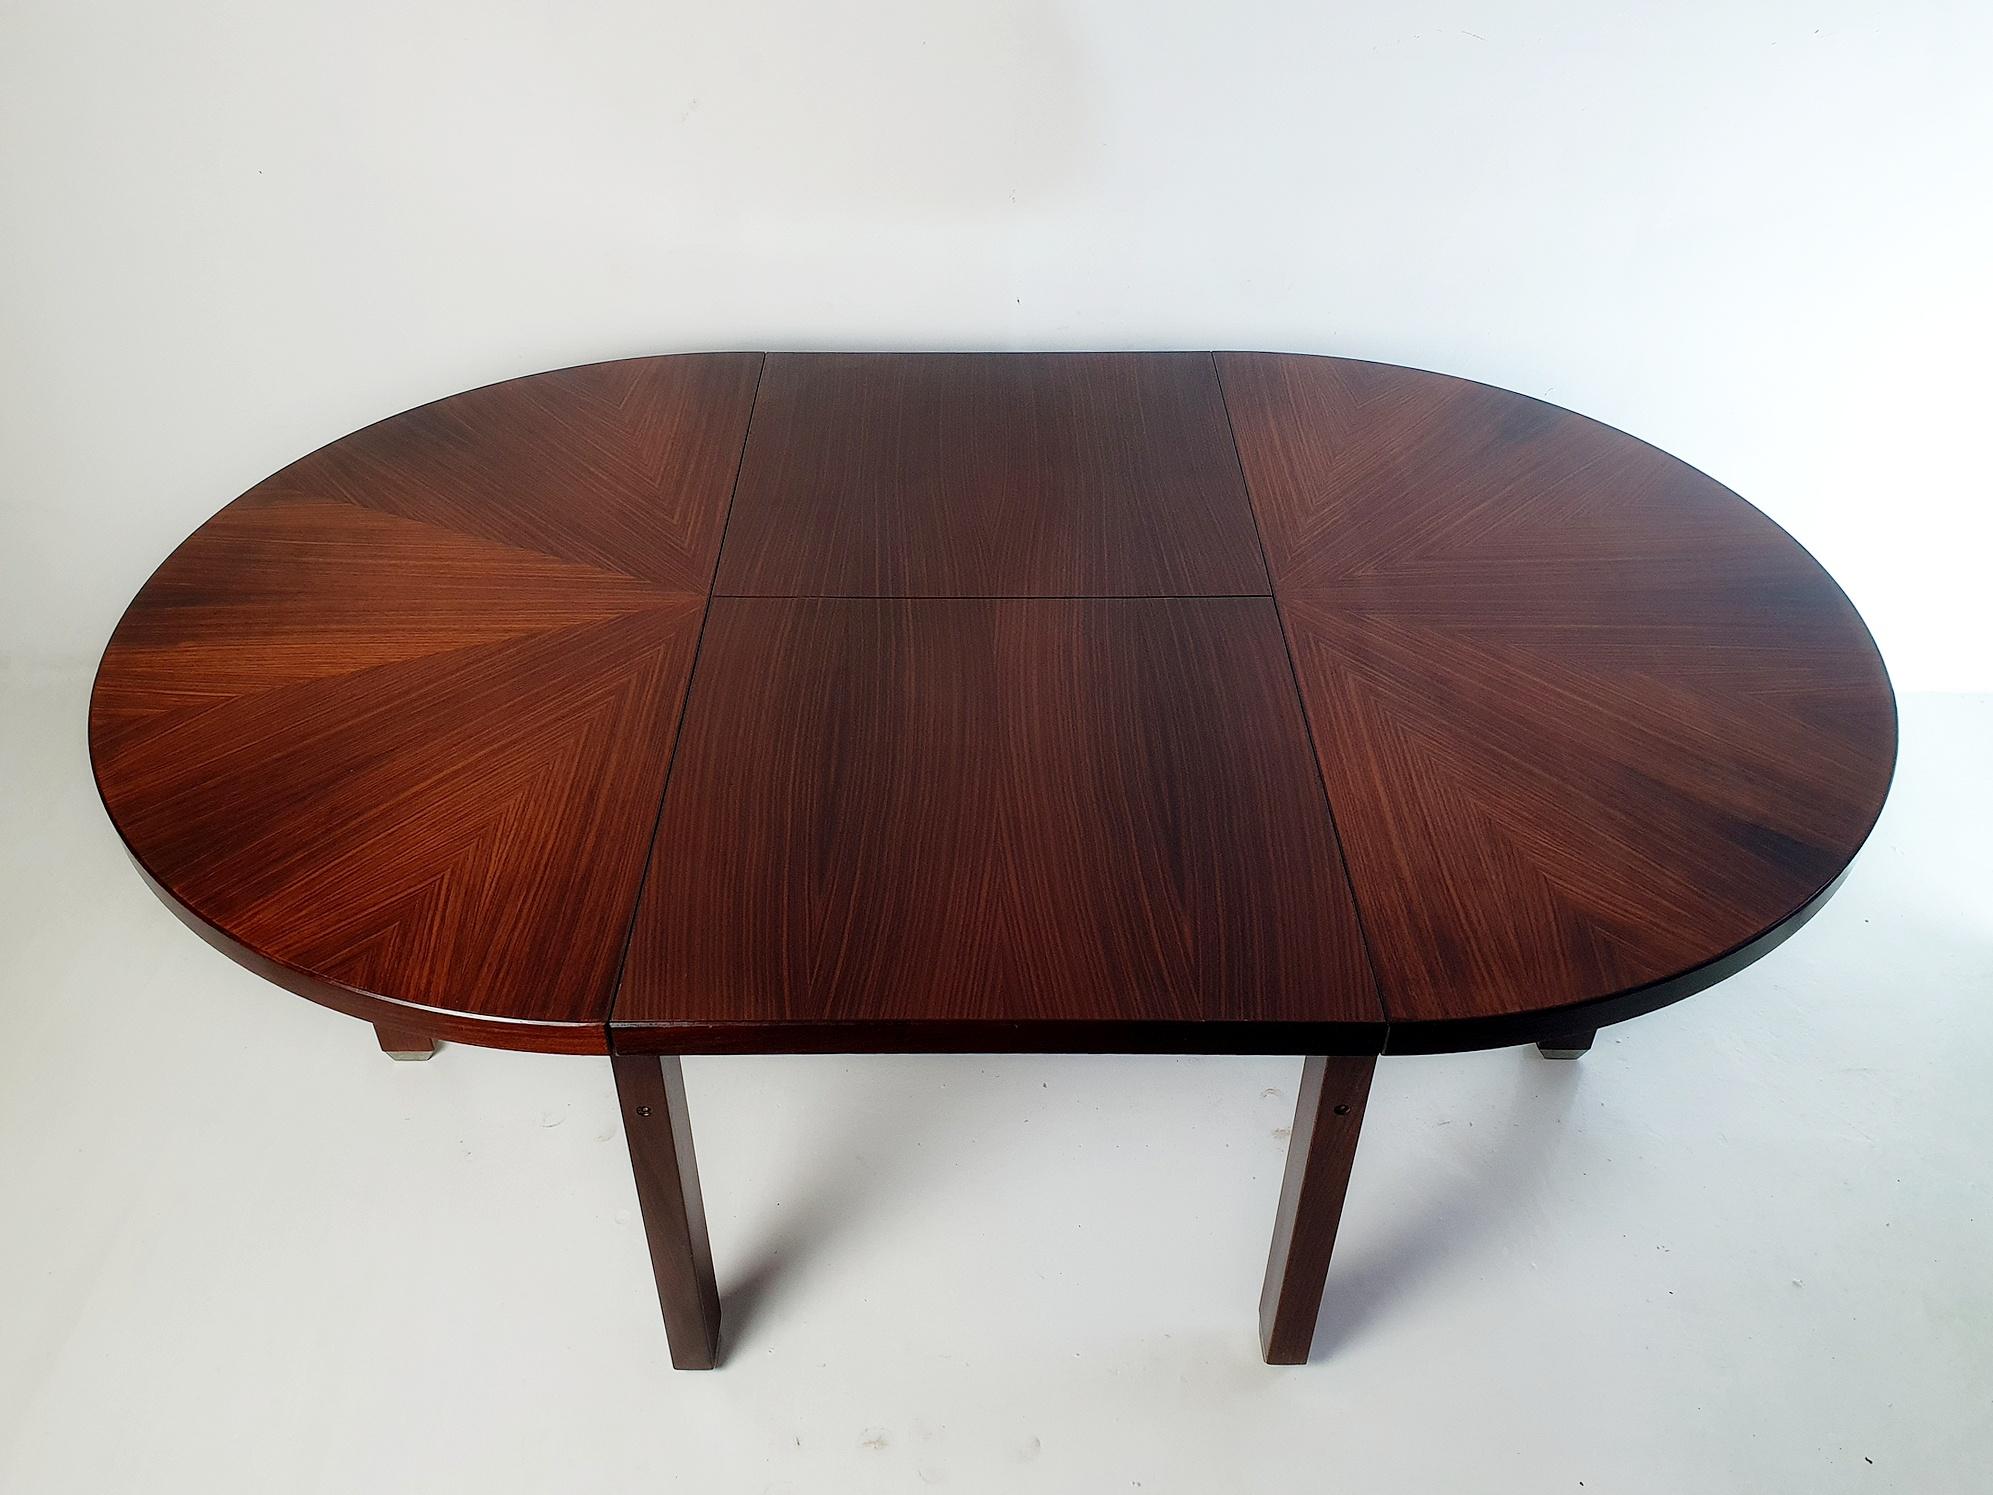 Table de salle à manger ronde à rallonge conçue par Ico Parisi pour MIM Roma en 1958. Ico Parisi a réalisé une collection complète de mobilier d'intérieur pour MIM Roma. Cette table a un diamètre de 120 cm et mesure 180 cm lorsqu'elle est déployée.